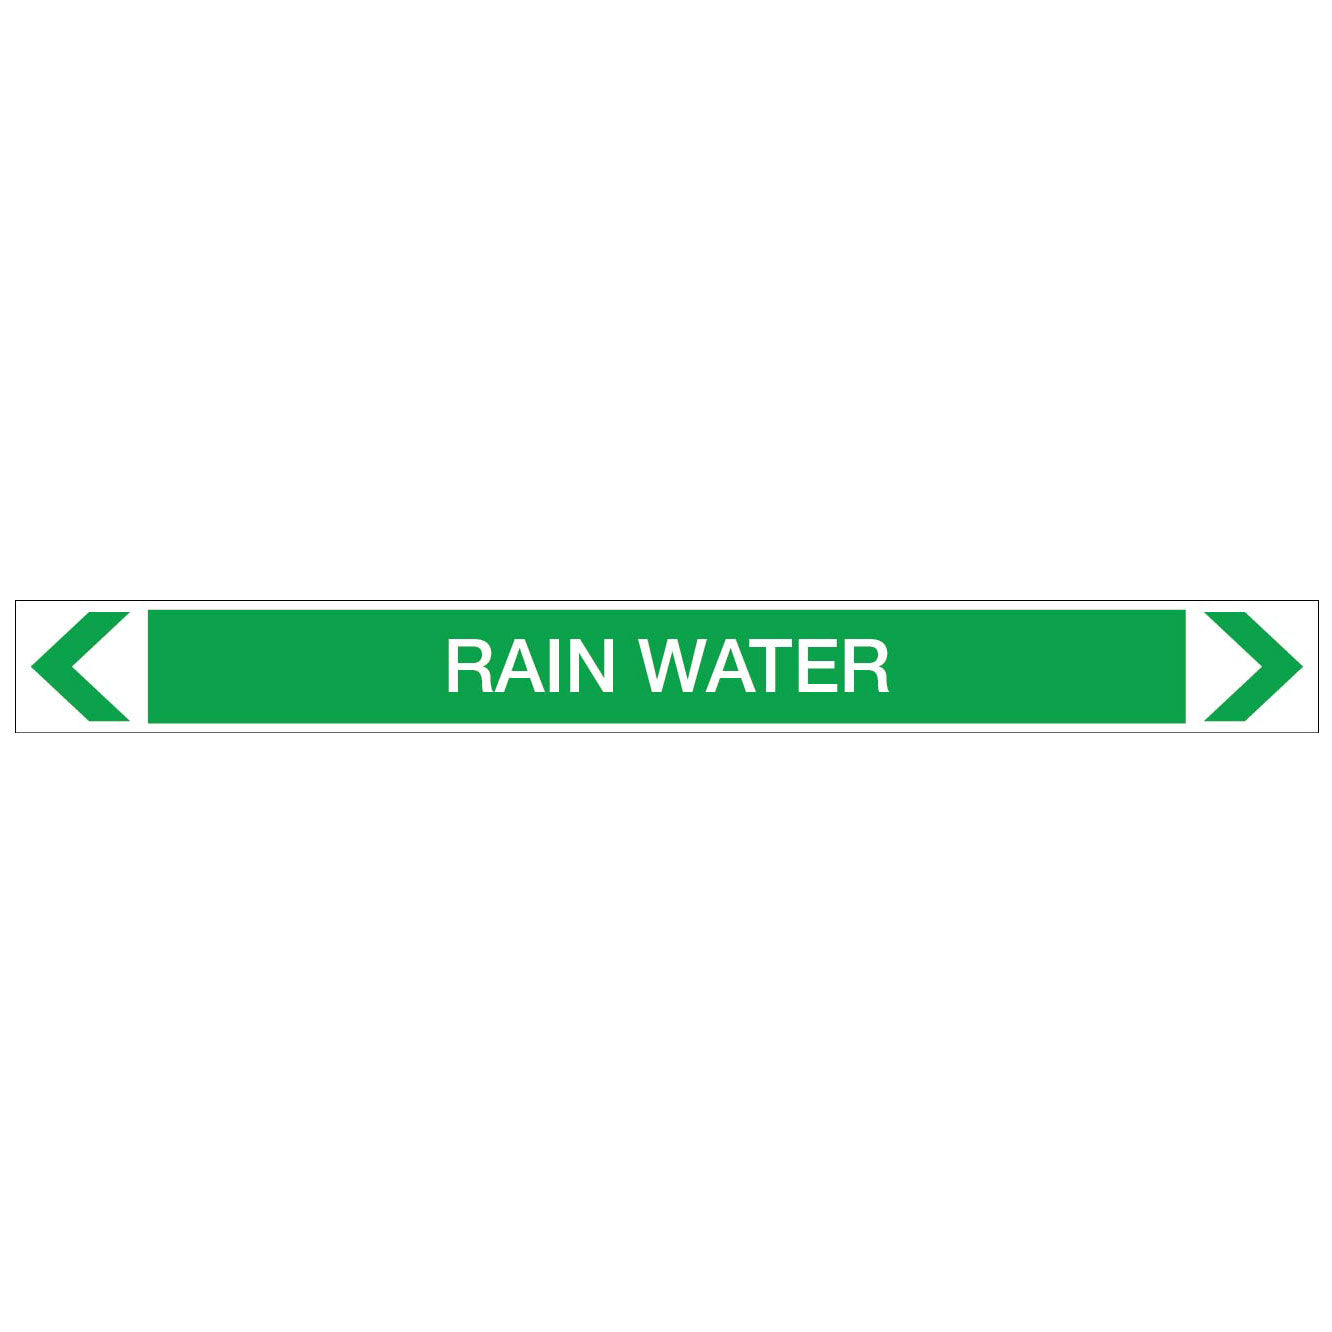 Water - Rain Water - Pipe Marker Sticker